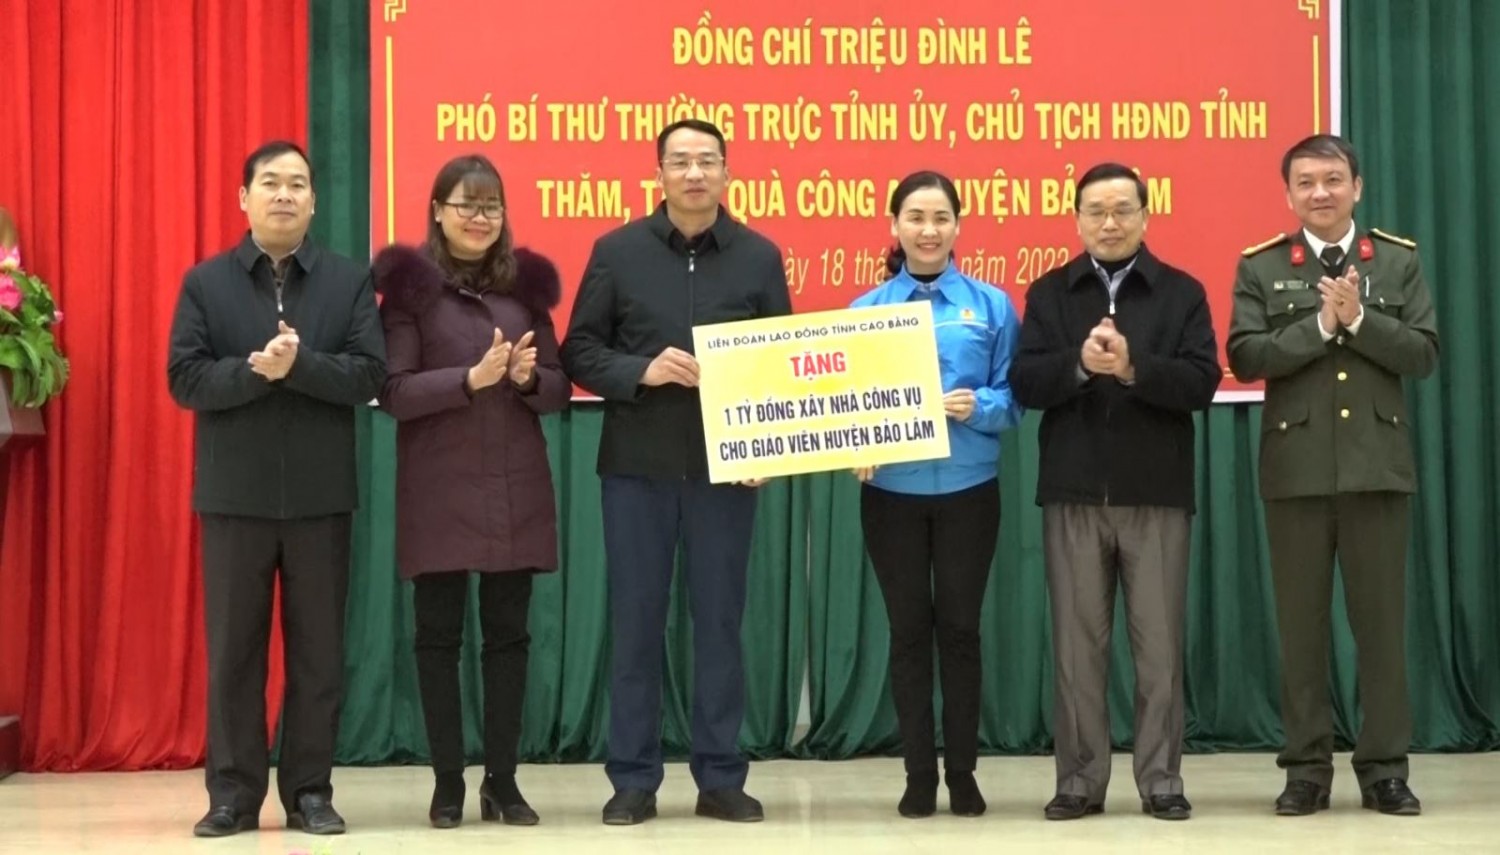 Đoàn công tác của tỉnh trao hỗ trợ xây nhà công vụ cho giáo viên tại huyện Bảo Lâm.